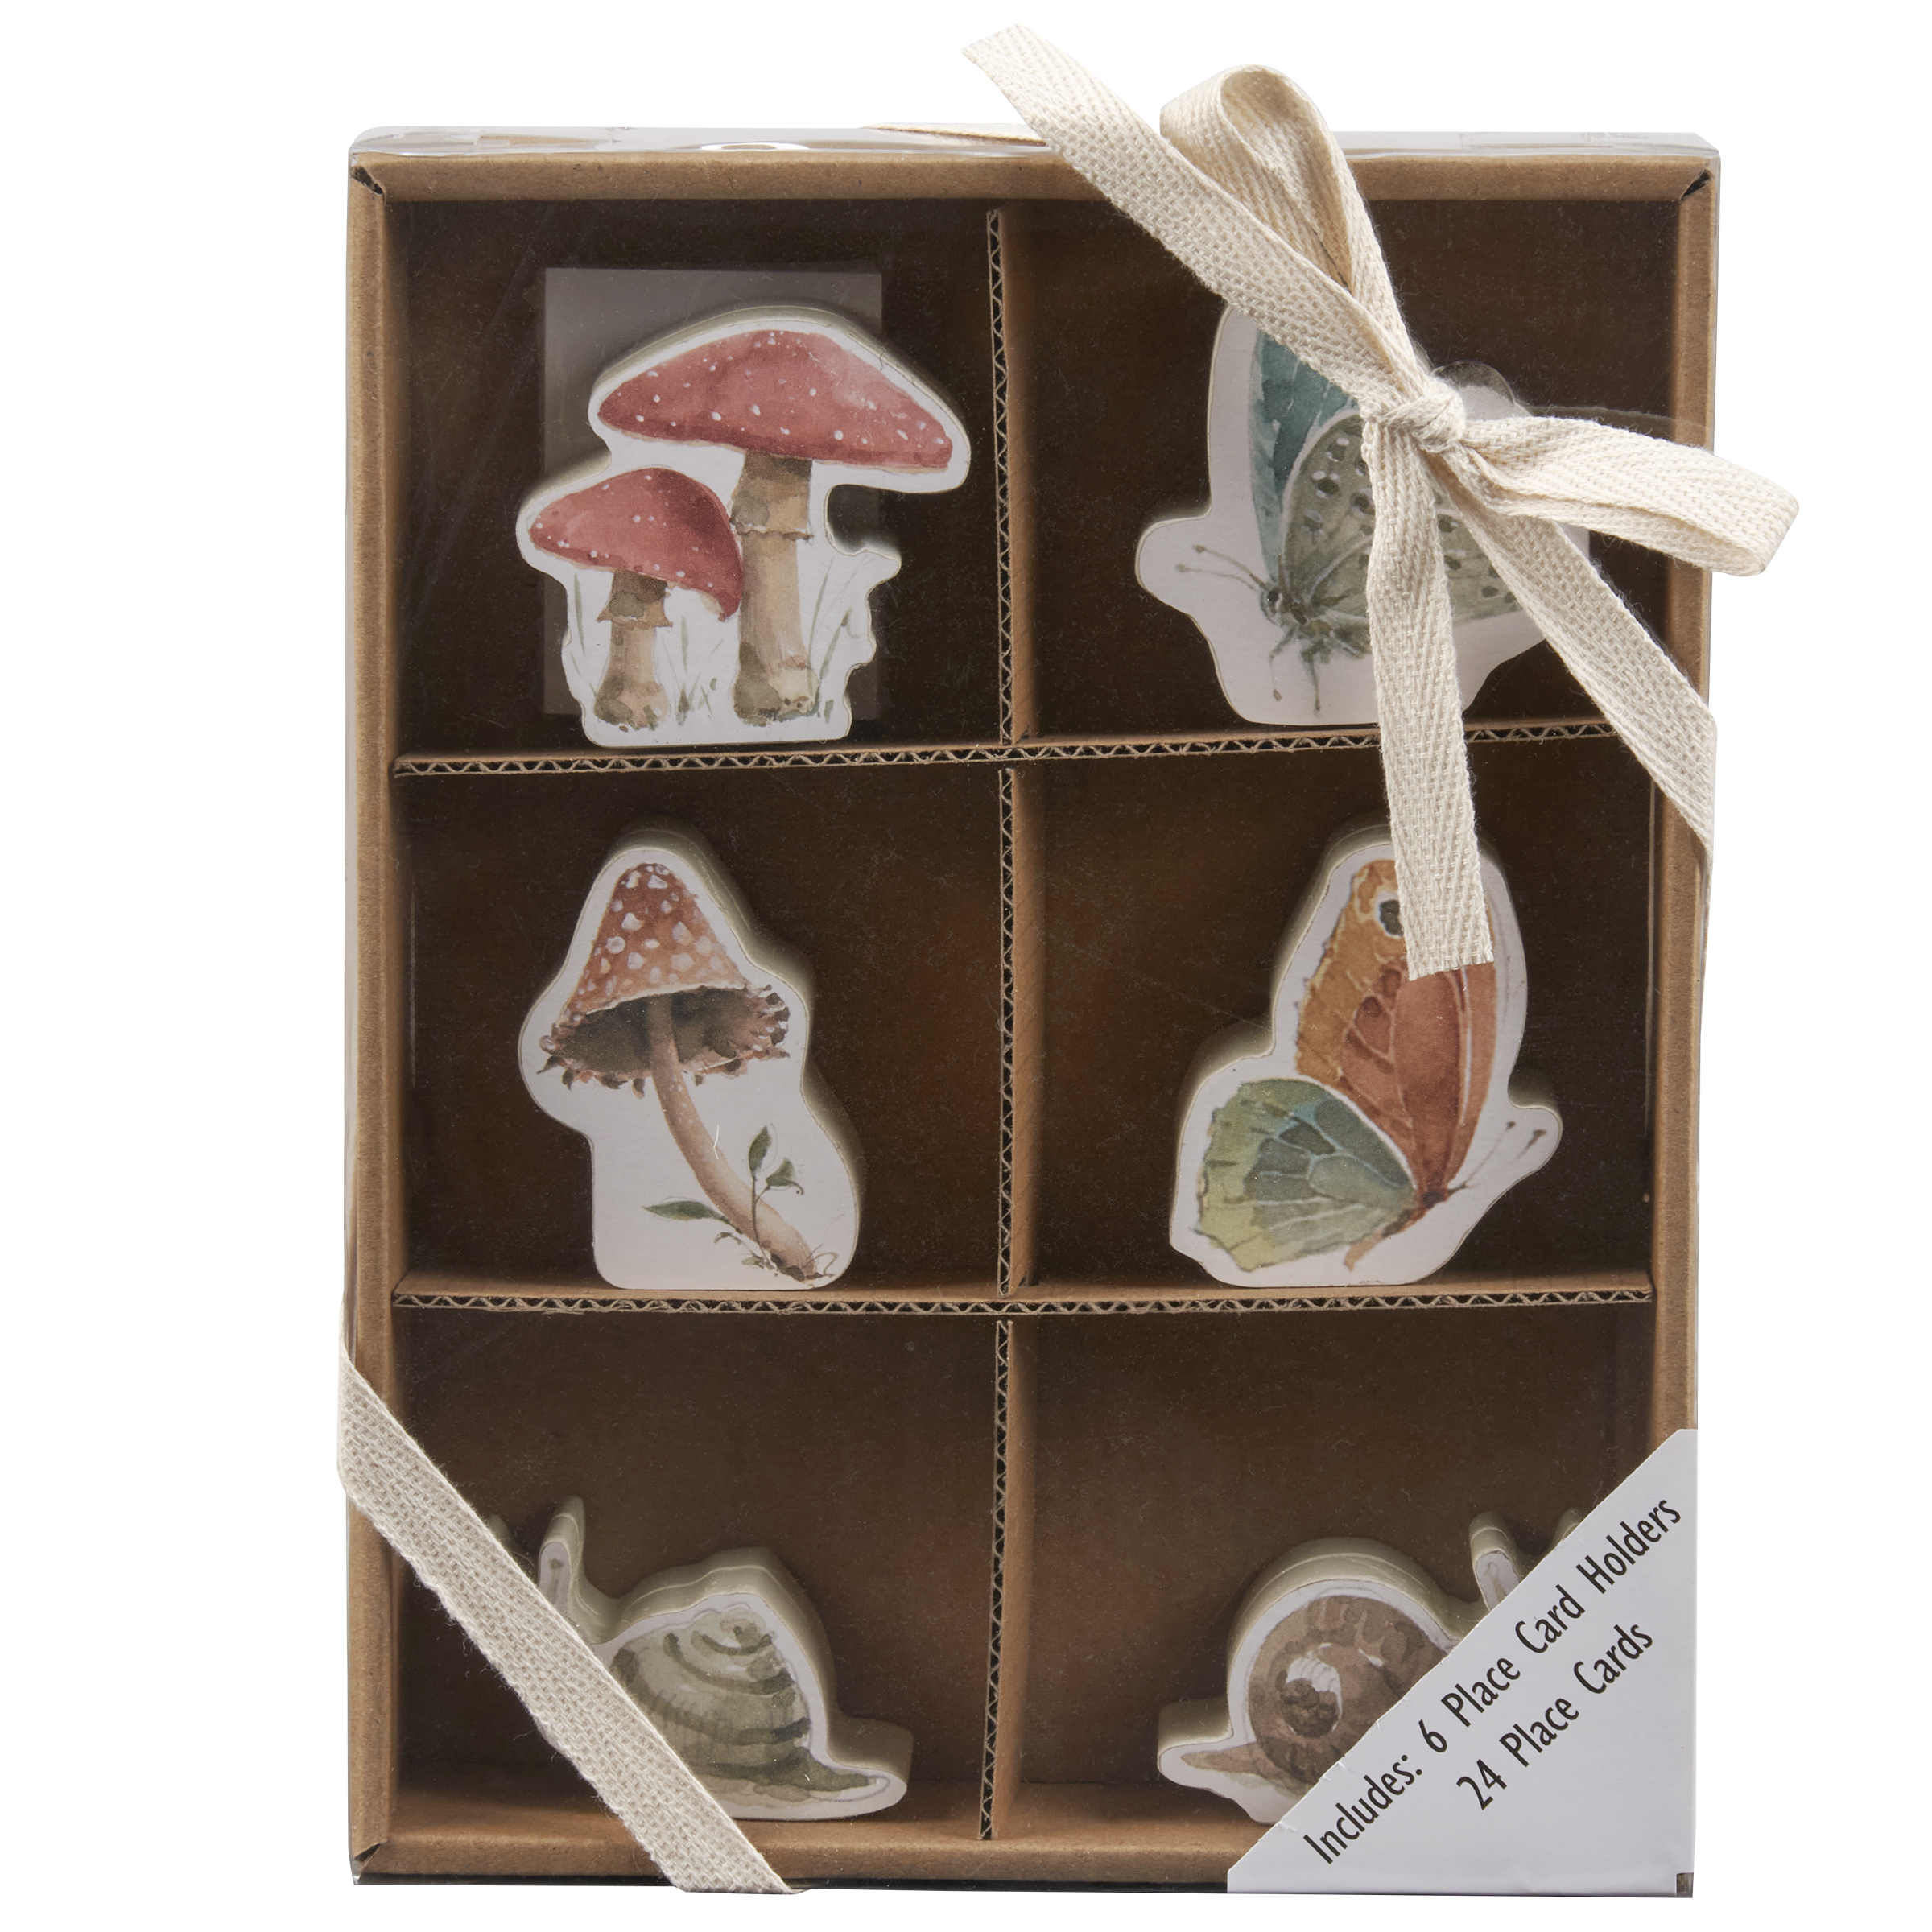 New Dimensions Learn & Craft Cross stitch Kits: Mushroom/Snail